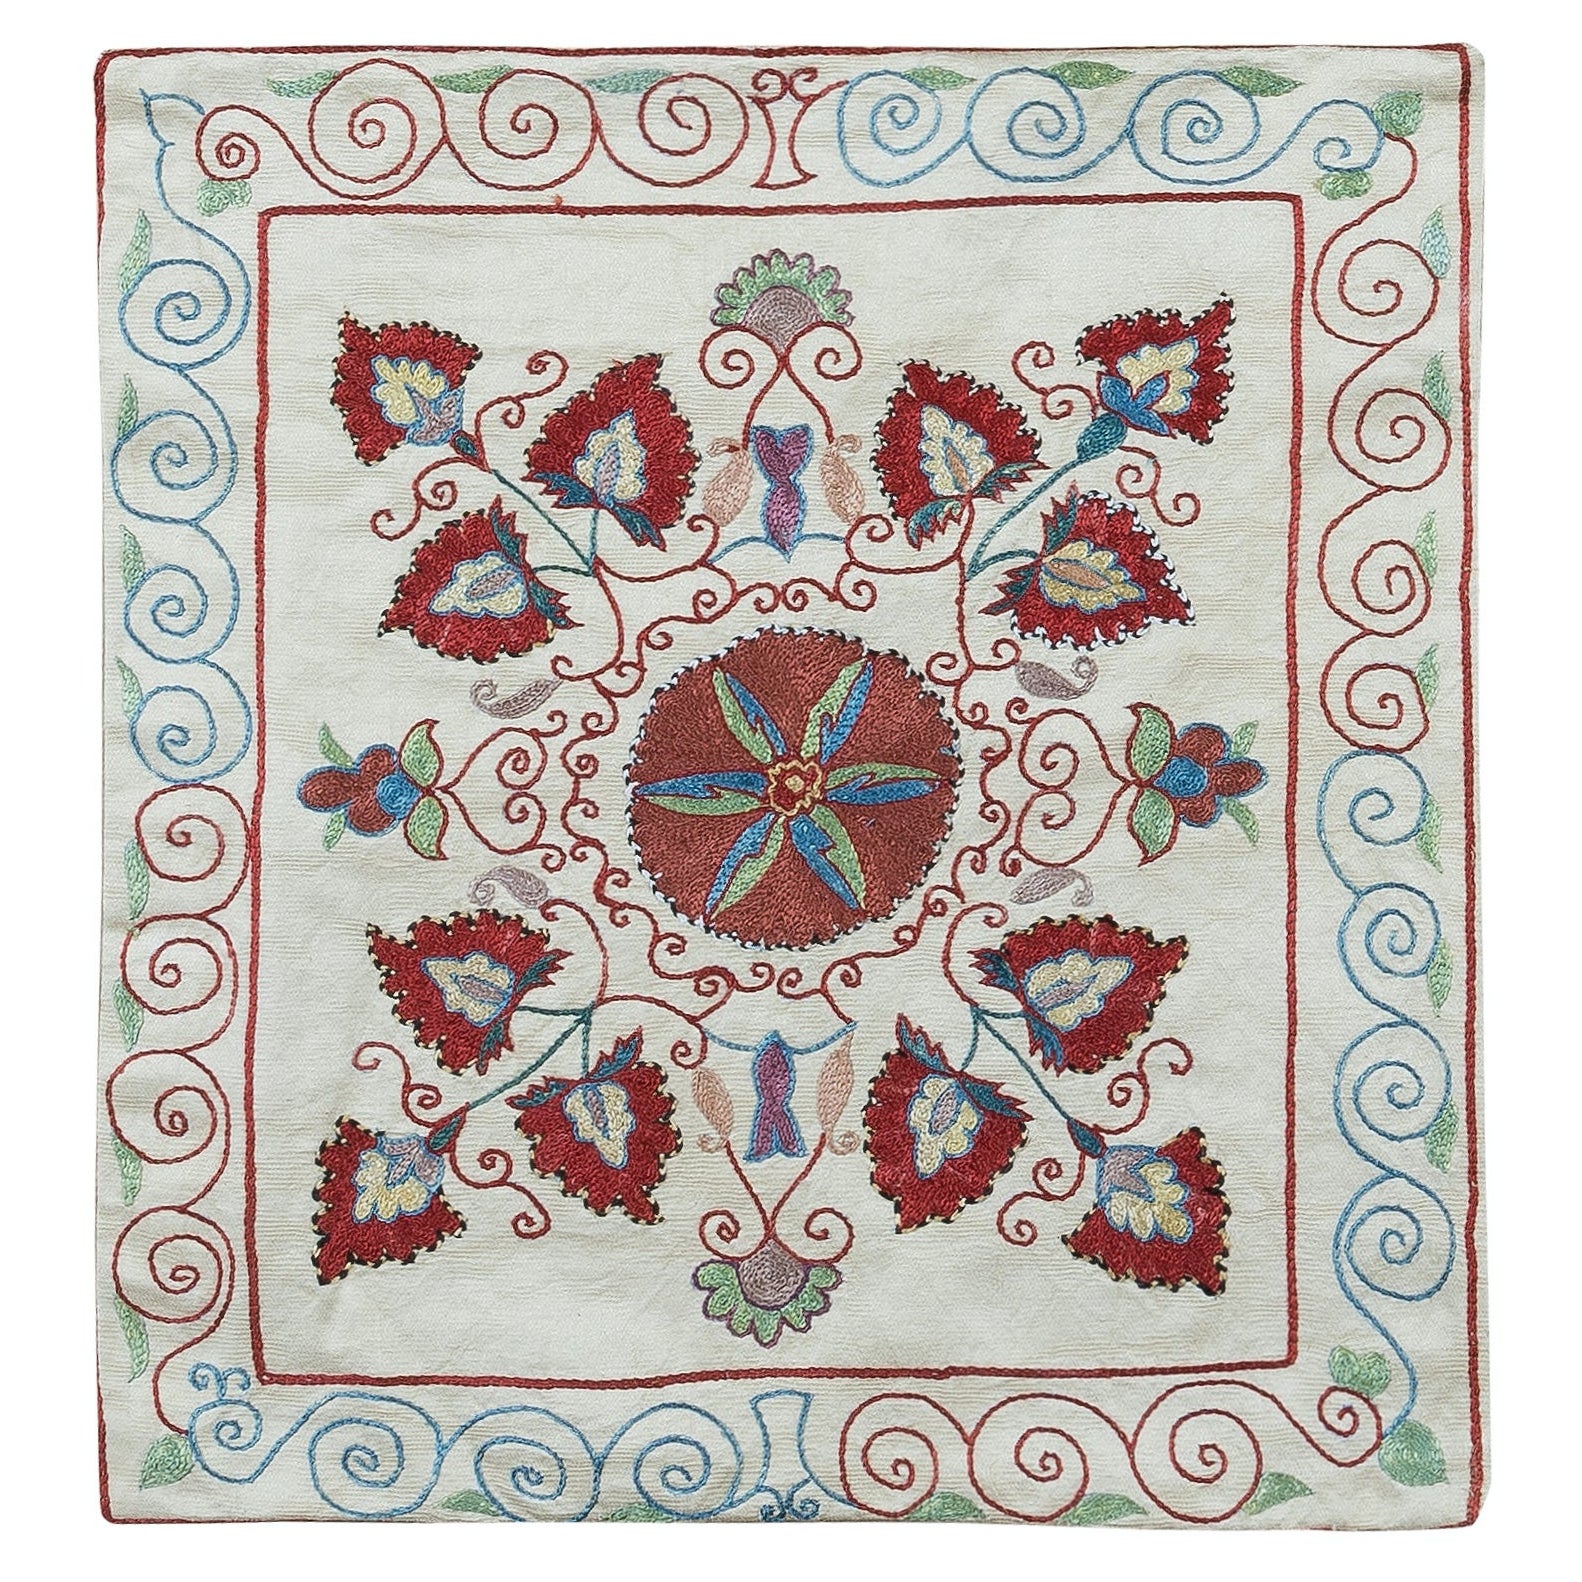 Central Asian Suzani Textile Throw Pillow, 100% Silk Cushion Cover